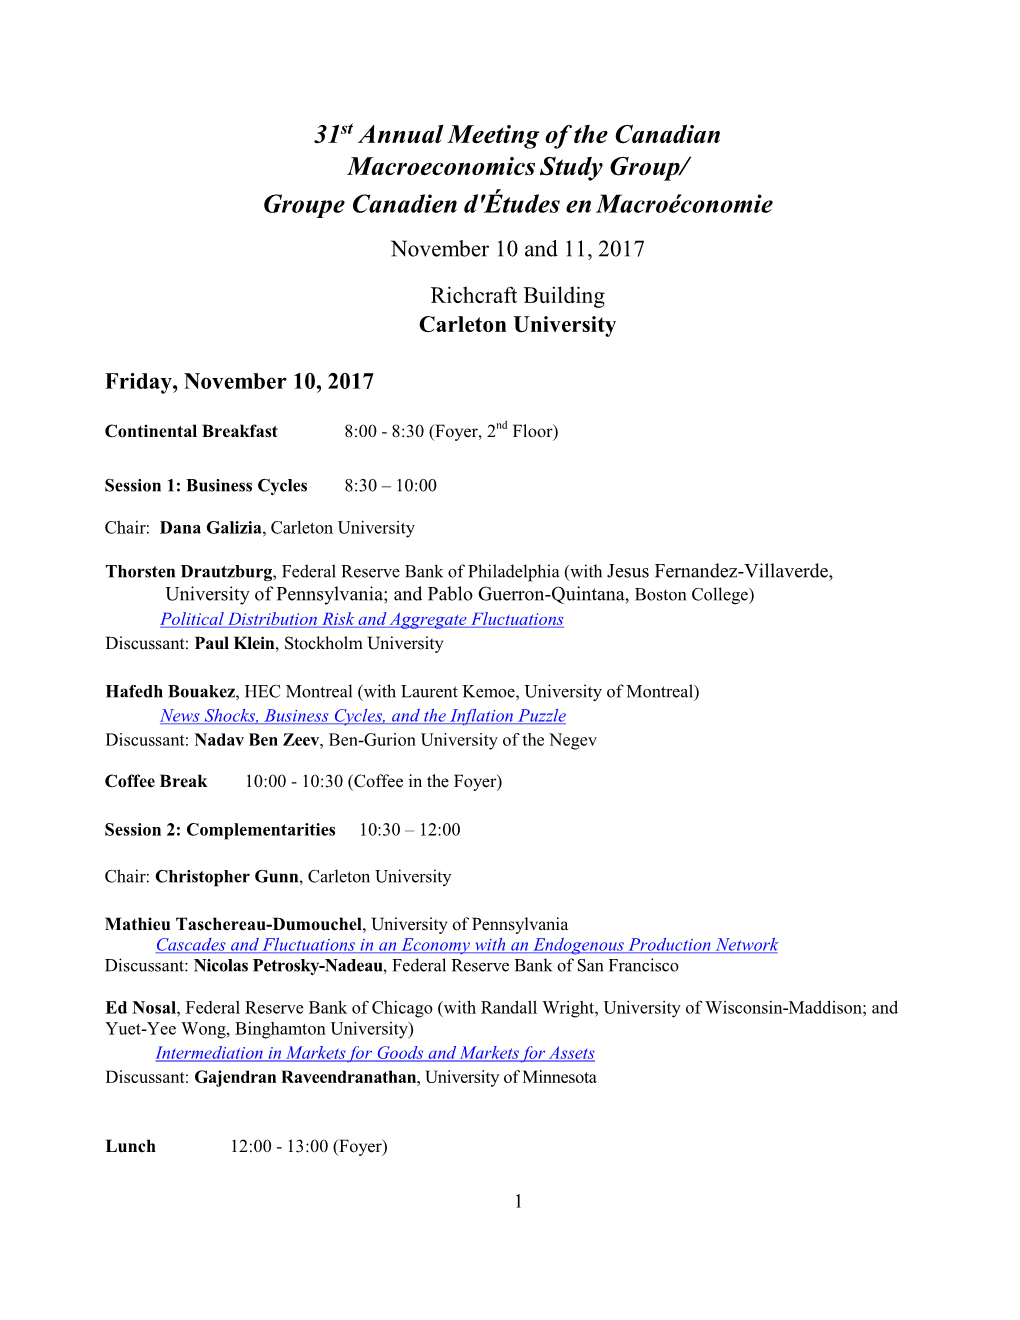 31St Annual Meeting of the Canadian Macroeconomics Study Group/ Groupe Canadien D'études En Macroéconomie